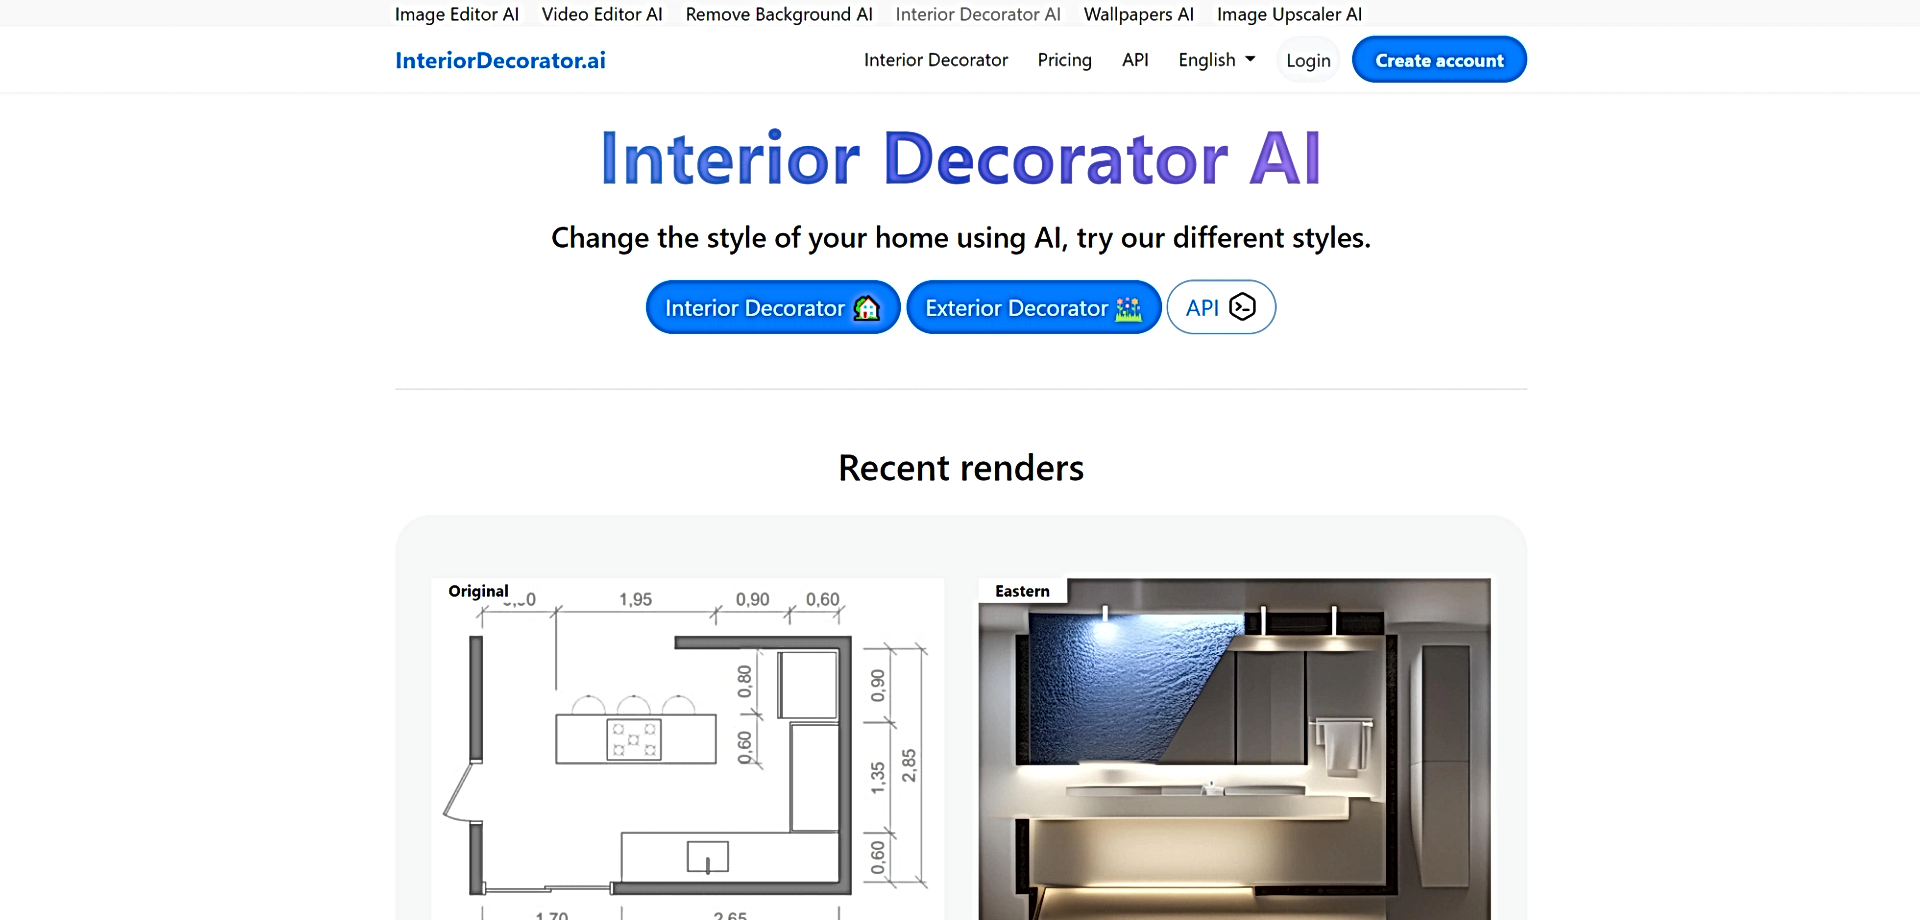 Interior Decorator AI featured